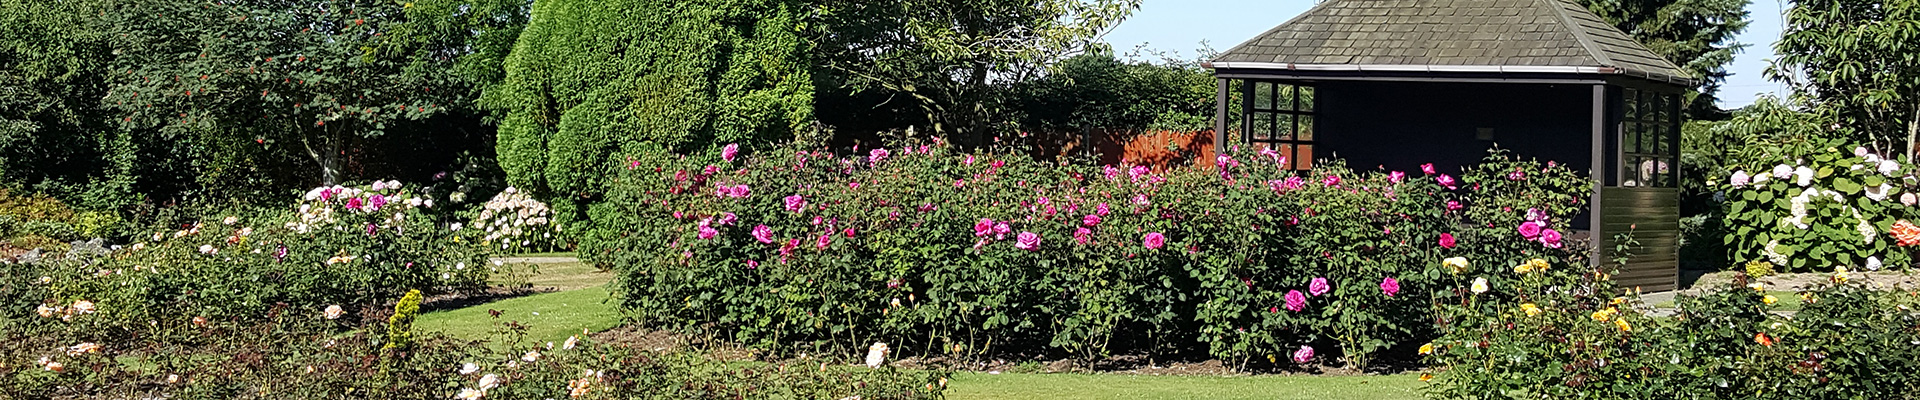 Photograph of flowering roses in the crematorium gardens